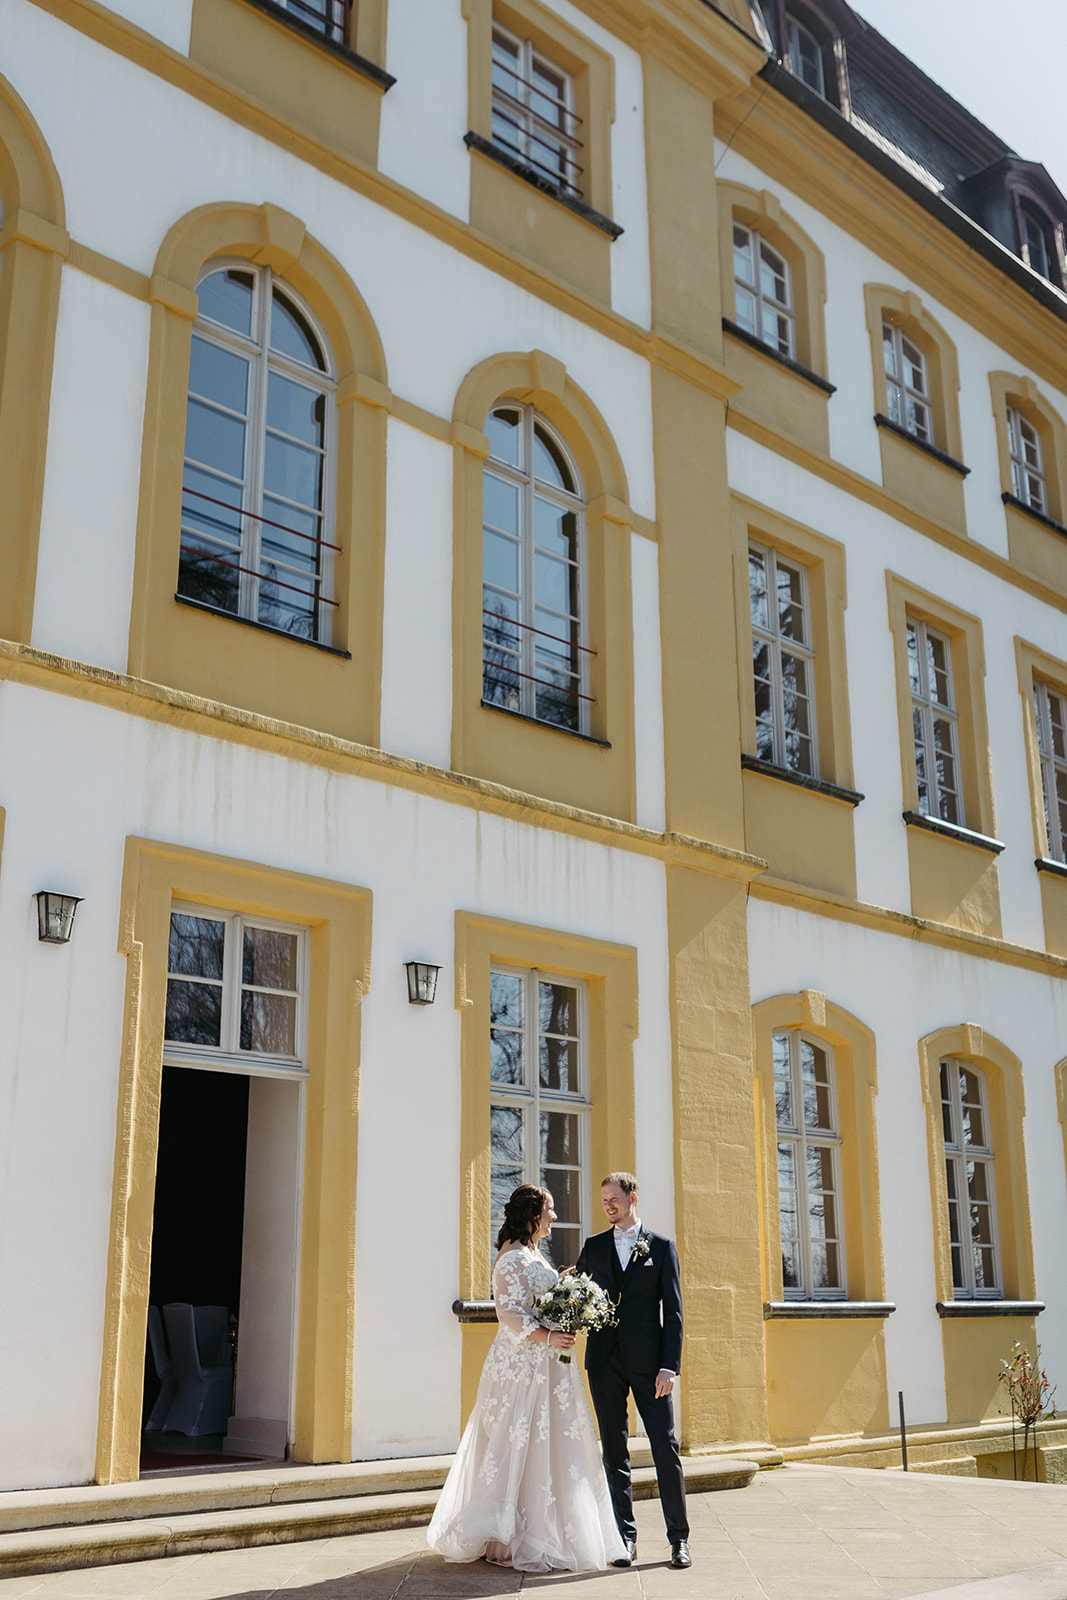 Verträumte Szene: Verliebtes Hochzeitspaar vor imposanter Schlossarchitektur.